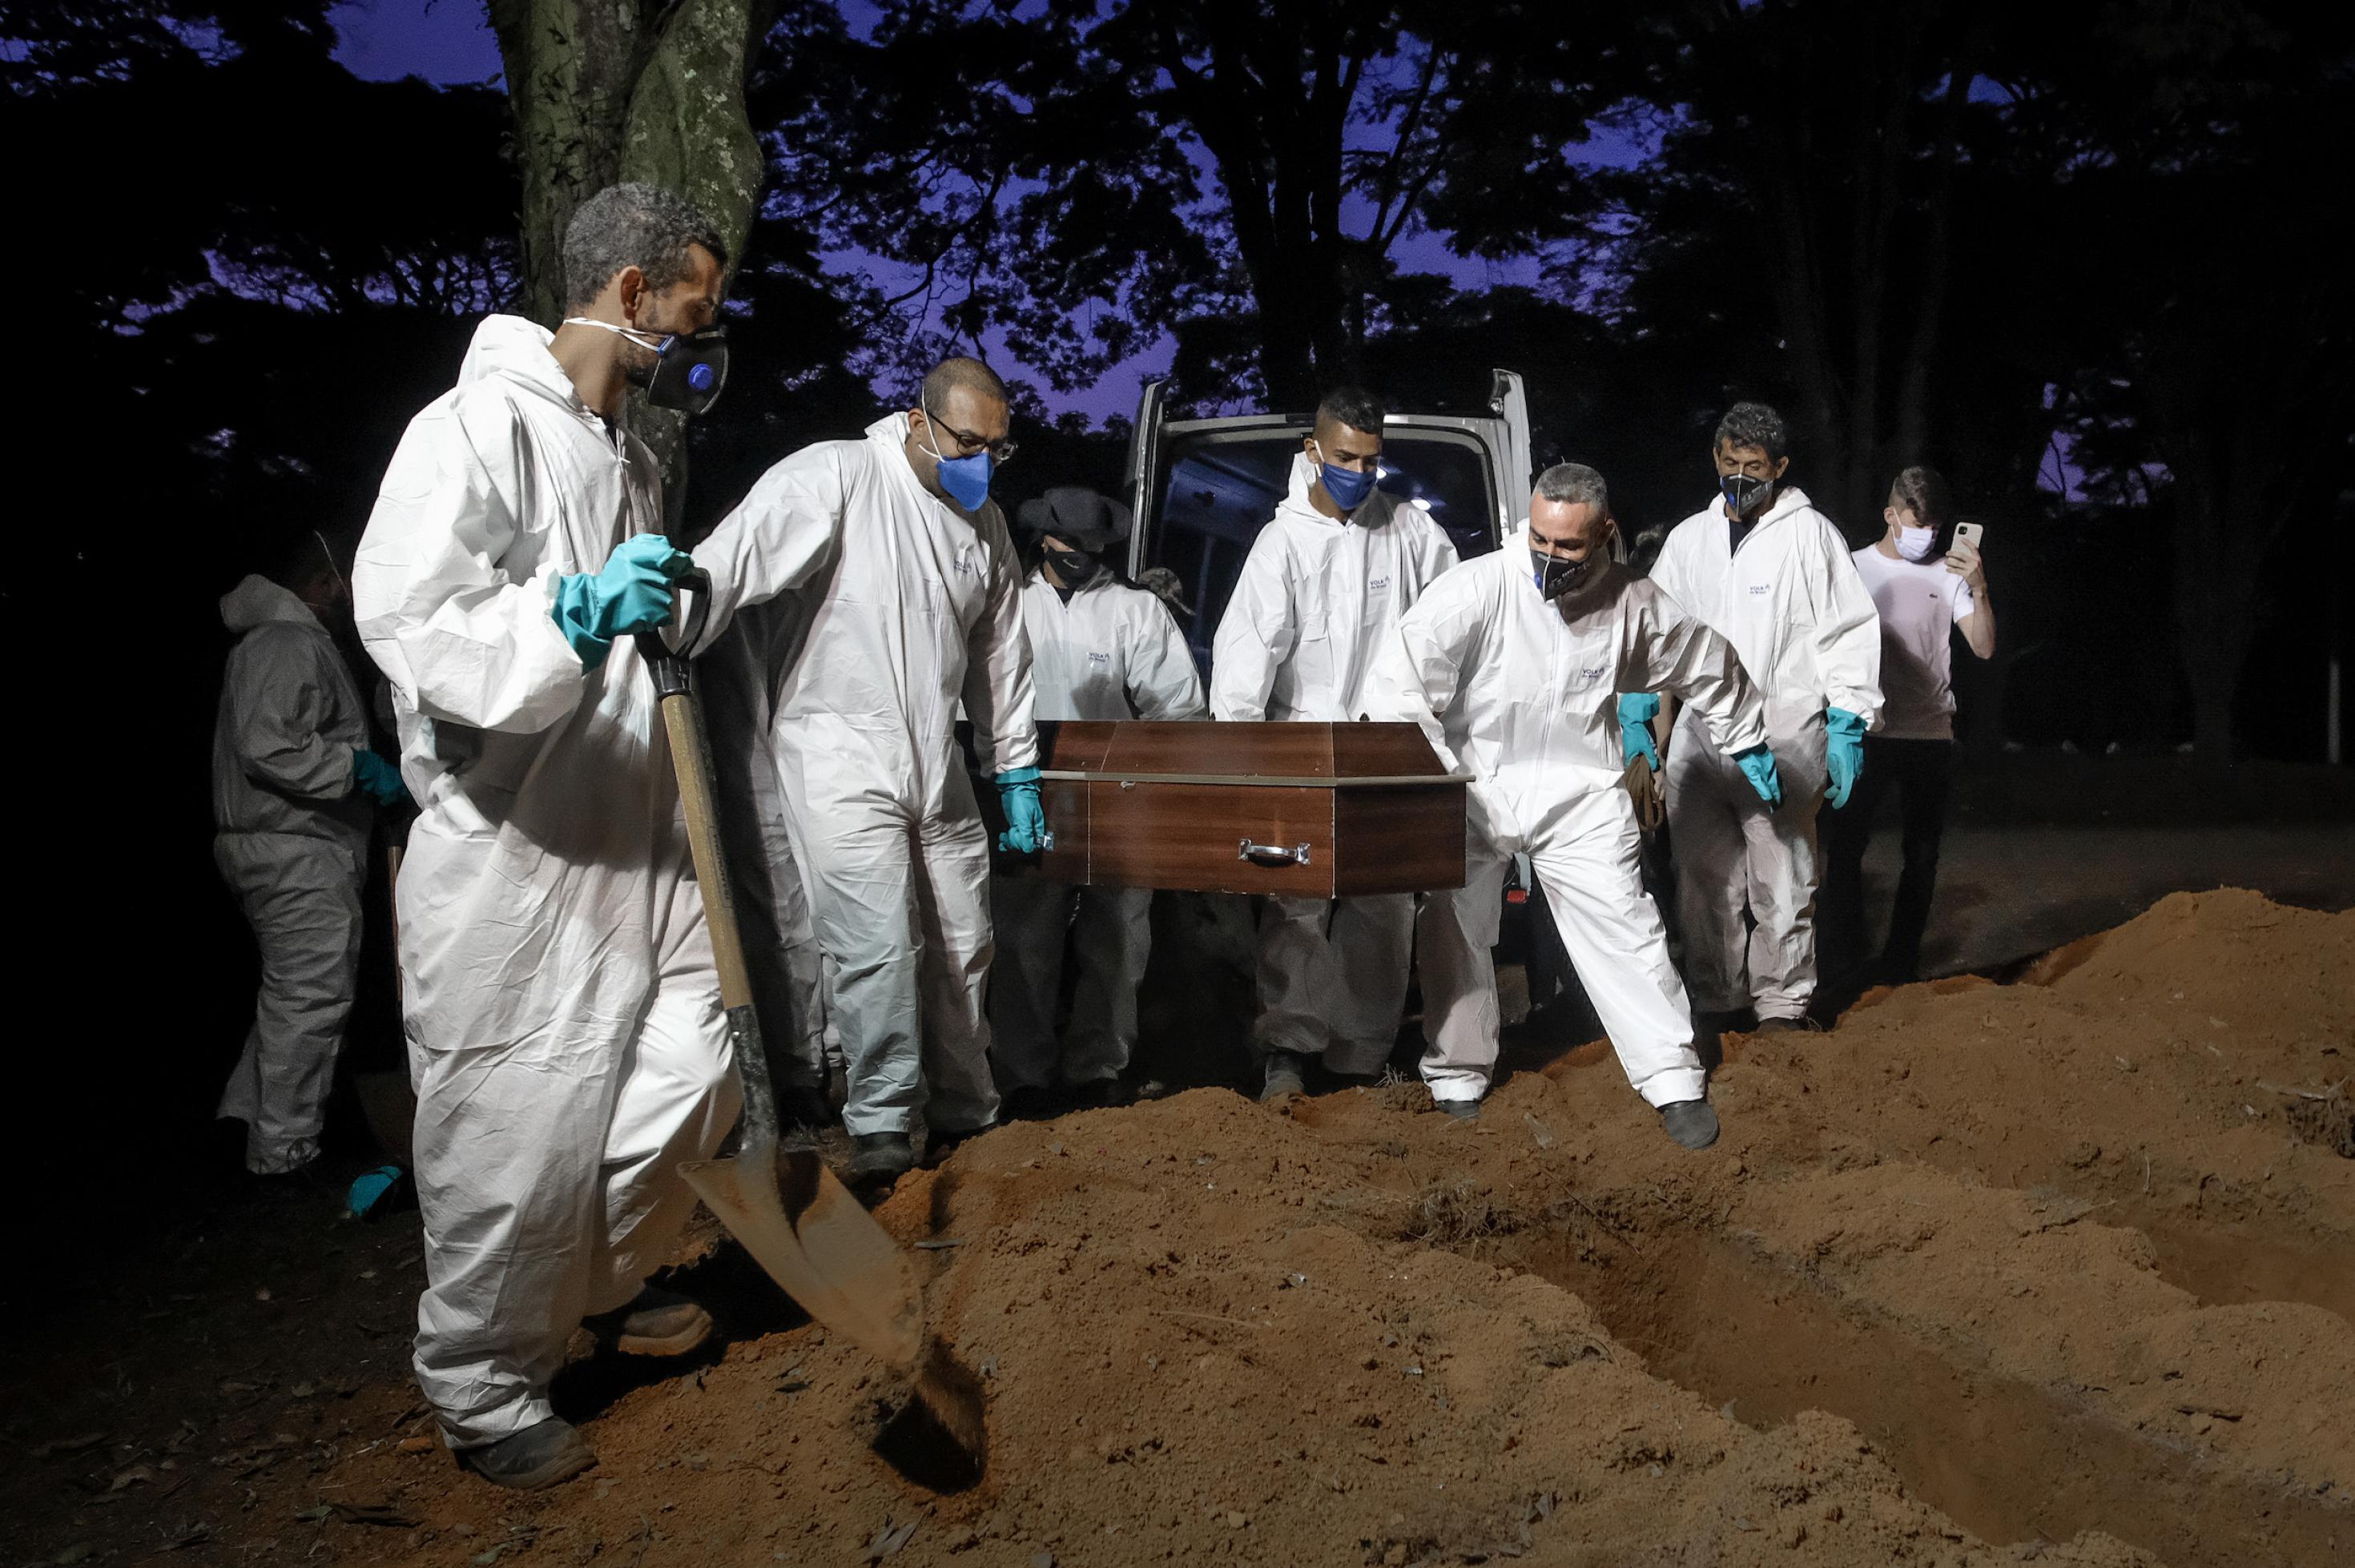 Menschen in weißer Schutzkleidung und mit Gesichtsmasken hieven bei nächtlichem Licht einen Sarg aus einem Beerdigungsfahrzeug und tragen ihn zum frisch ausgehobenen Grab.